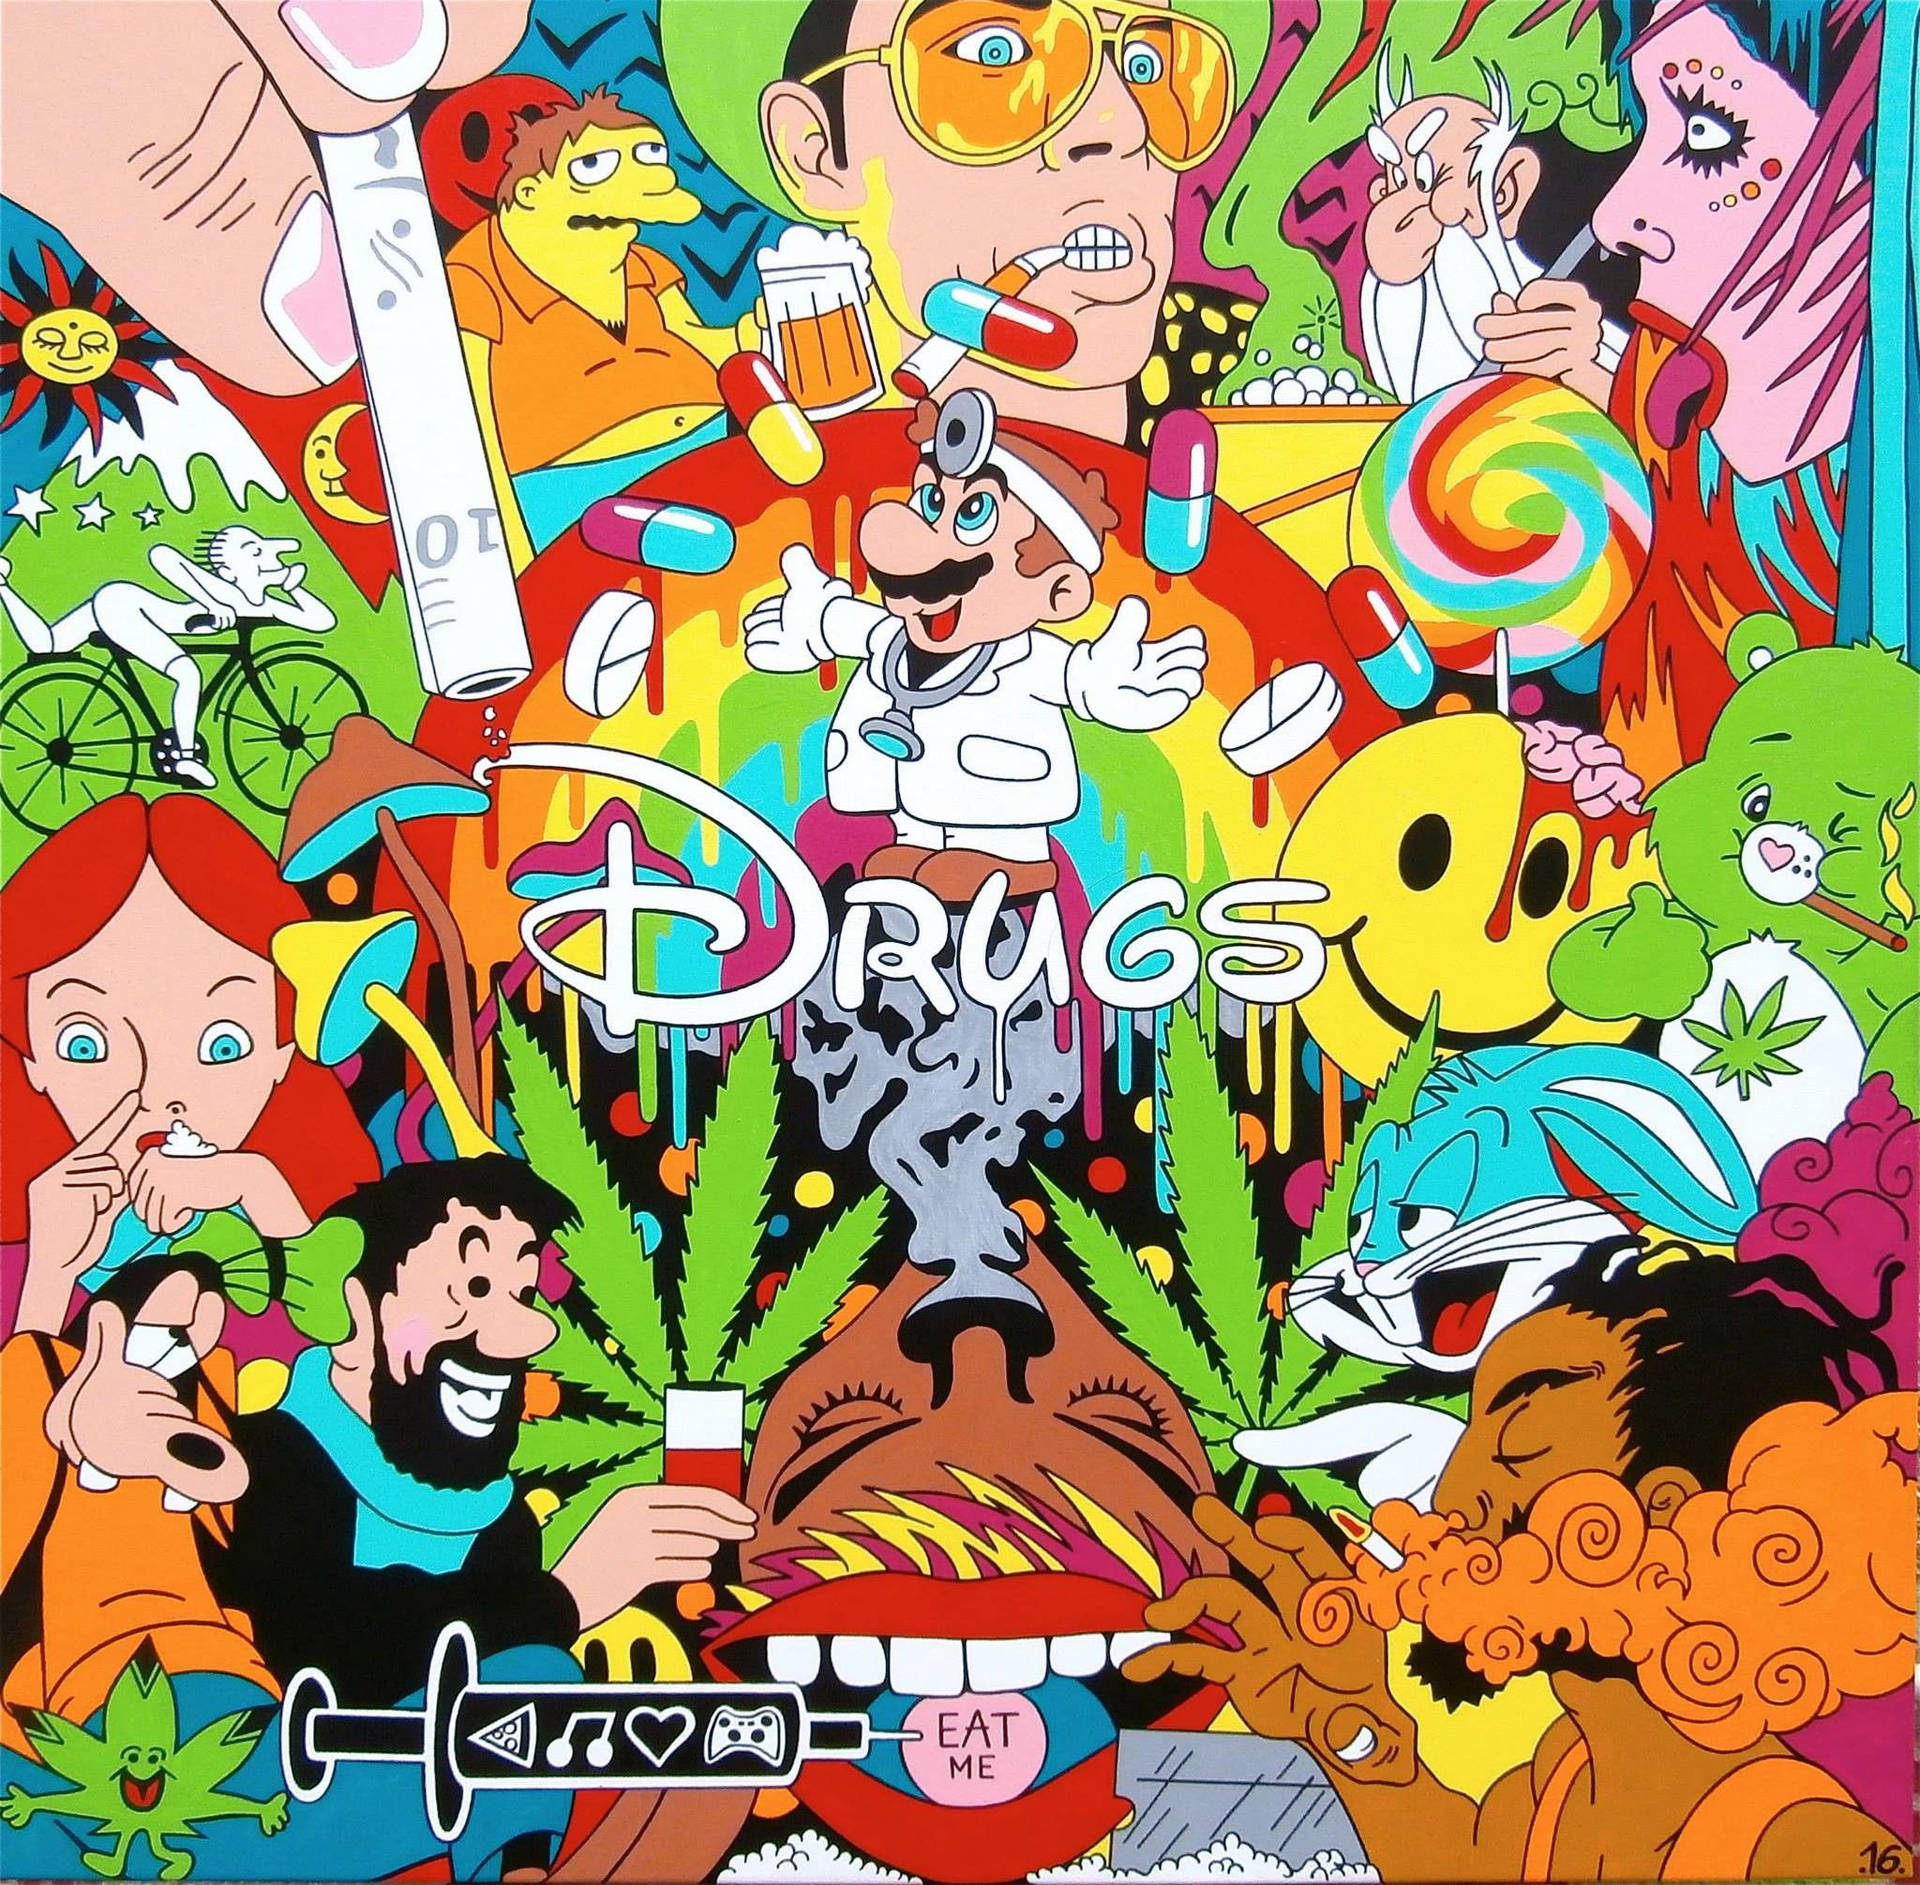 trippy drug drawings